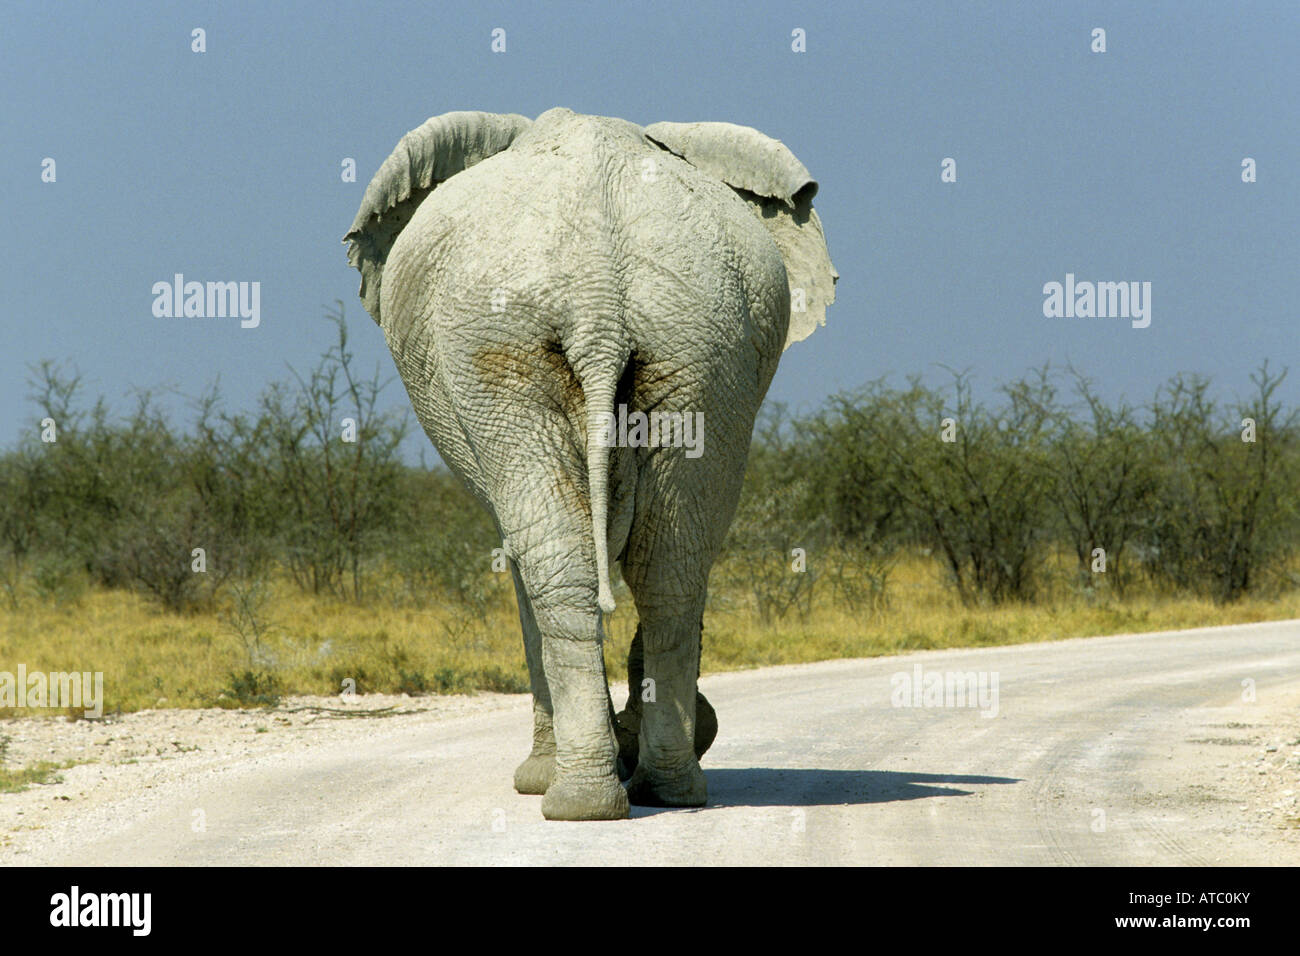 L'éléphant africain (Loxodonta africana), marche sur une rue, la Namibie Banque D'Images